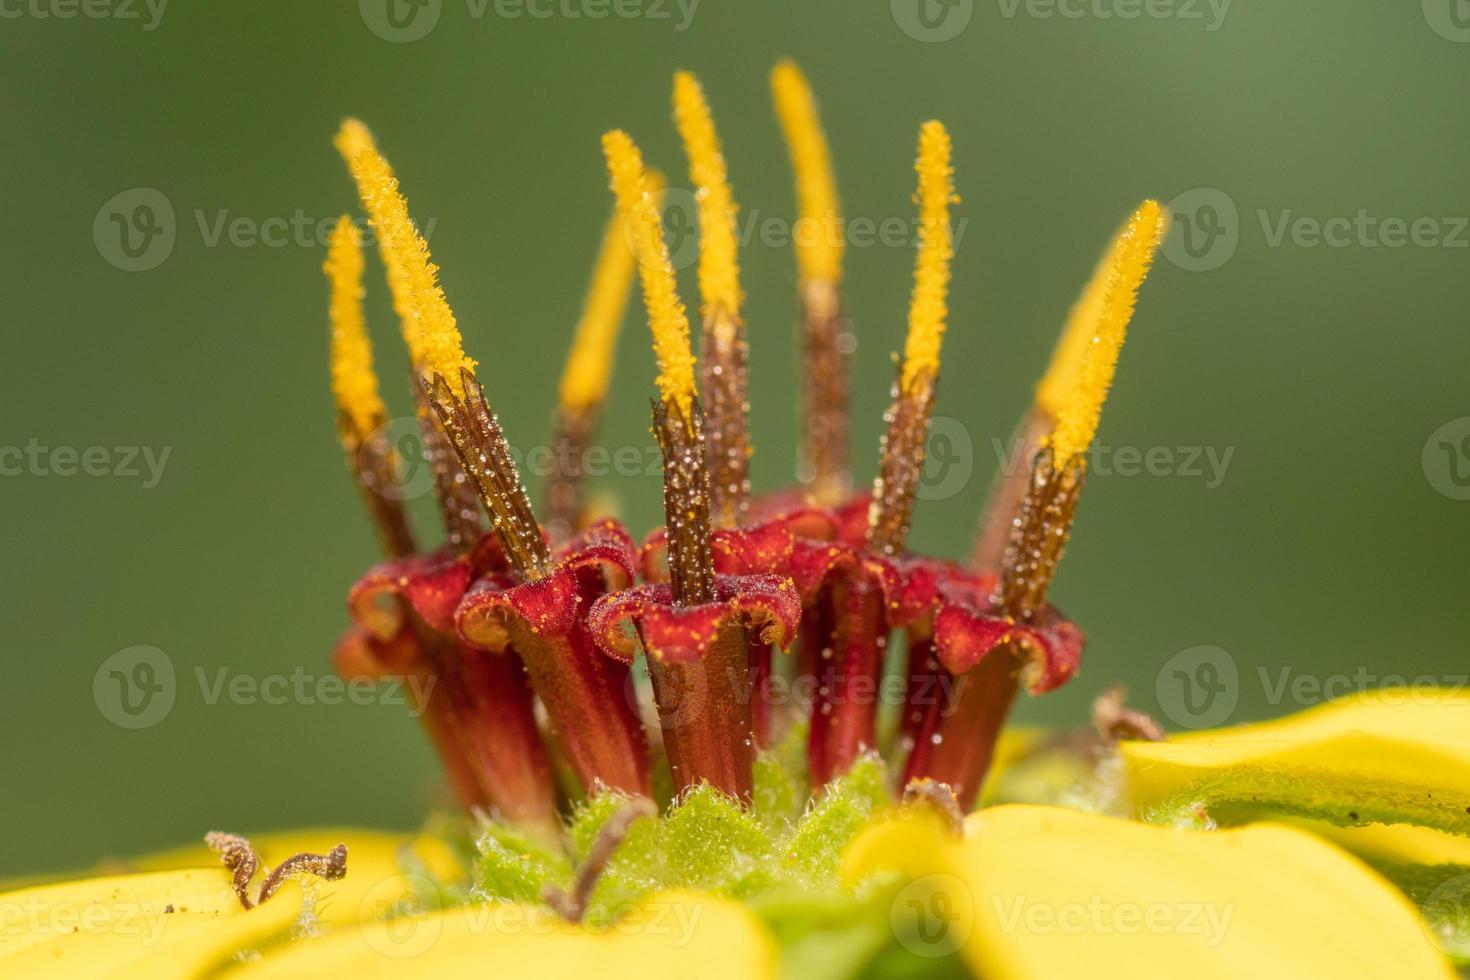 un primer plano extremo de una flor amarilla de berlandiera texana, que muestra el estambre, que consiste en la antera cubierta de polen y el filamento. foto